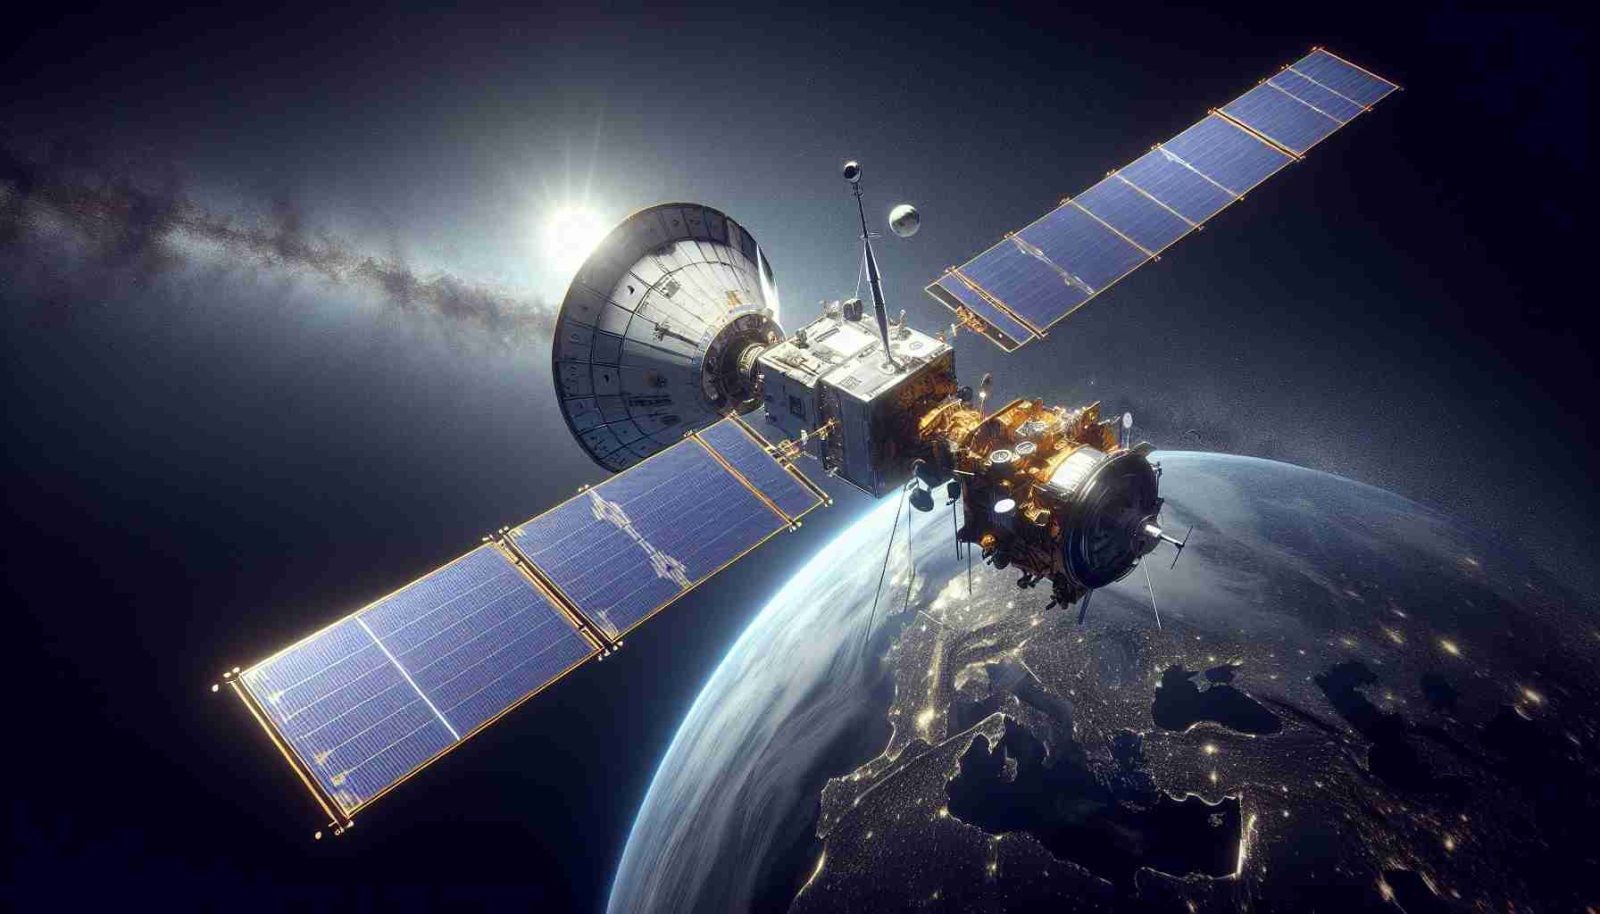 Gigantyczny europejski satelita wejdzie wkrótce w atmosferę ziemską. Gdzie i kiedy?